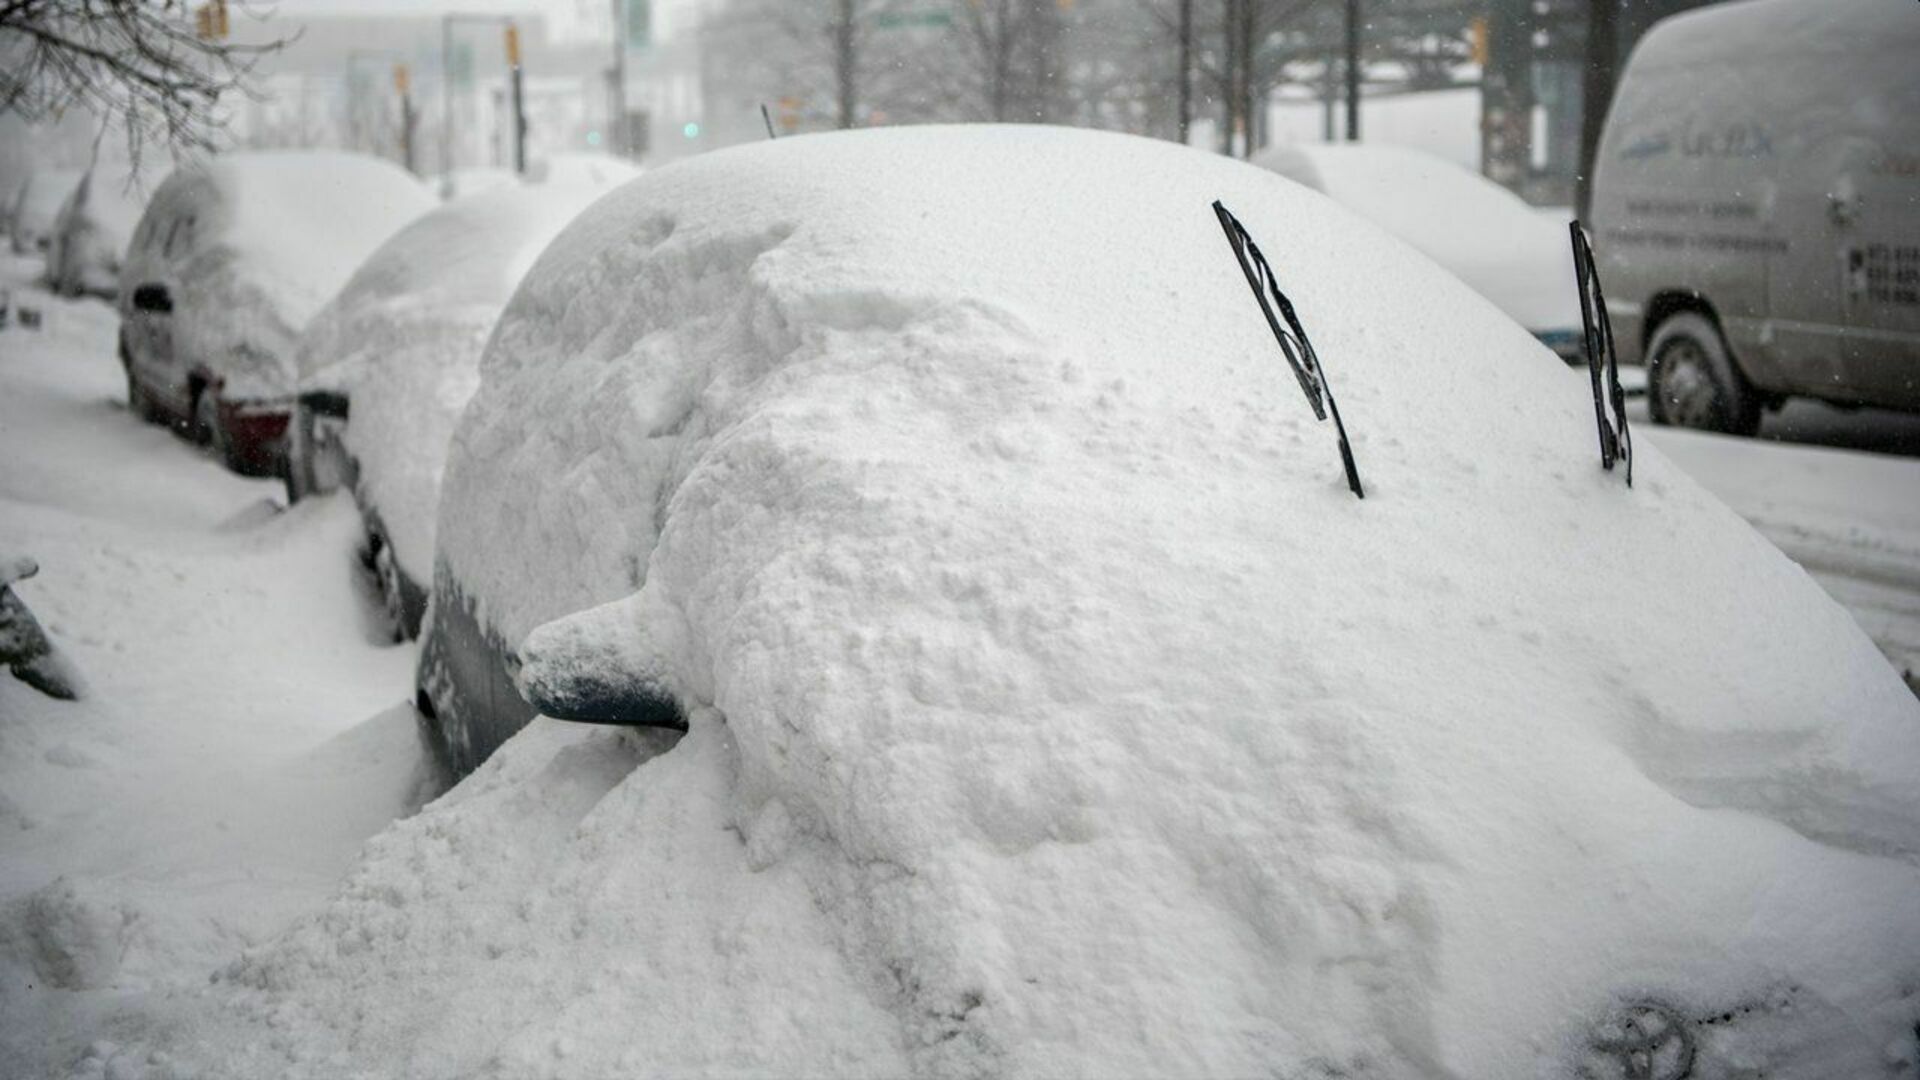 Очень большие сугробы. Много снега. Машина в сугробе. Машину засыпало снегом. Откапывает машину.